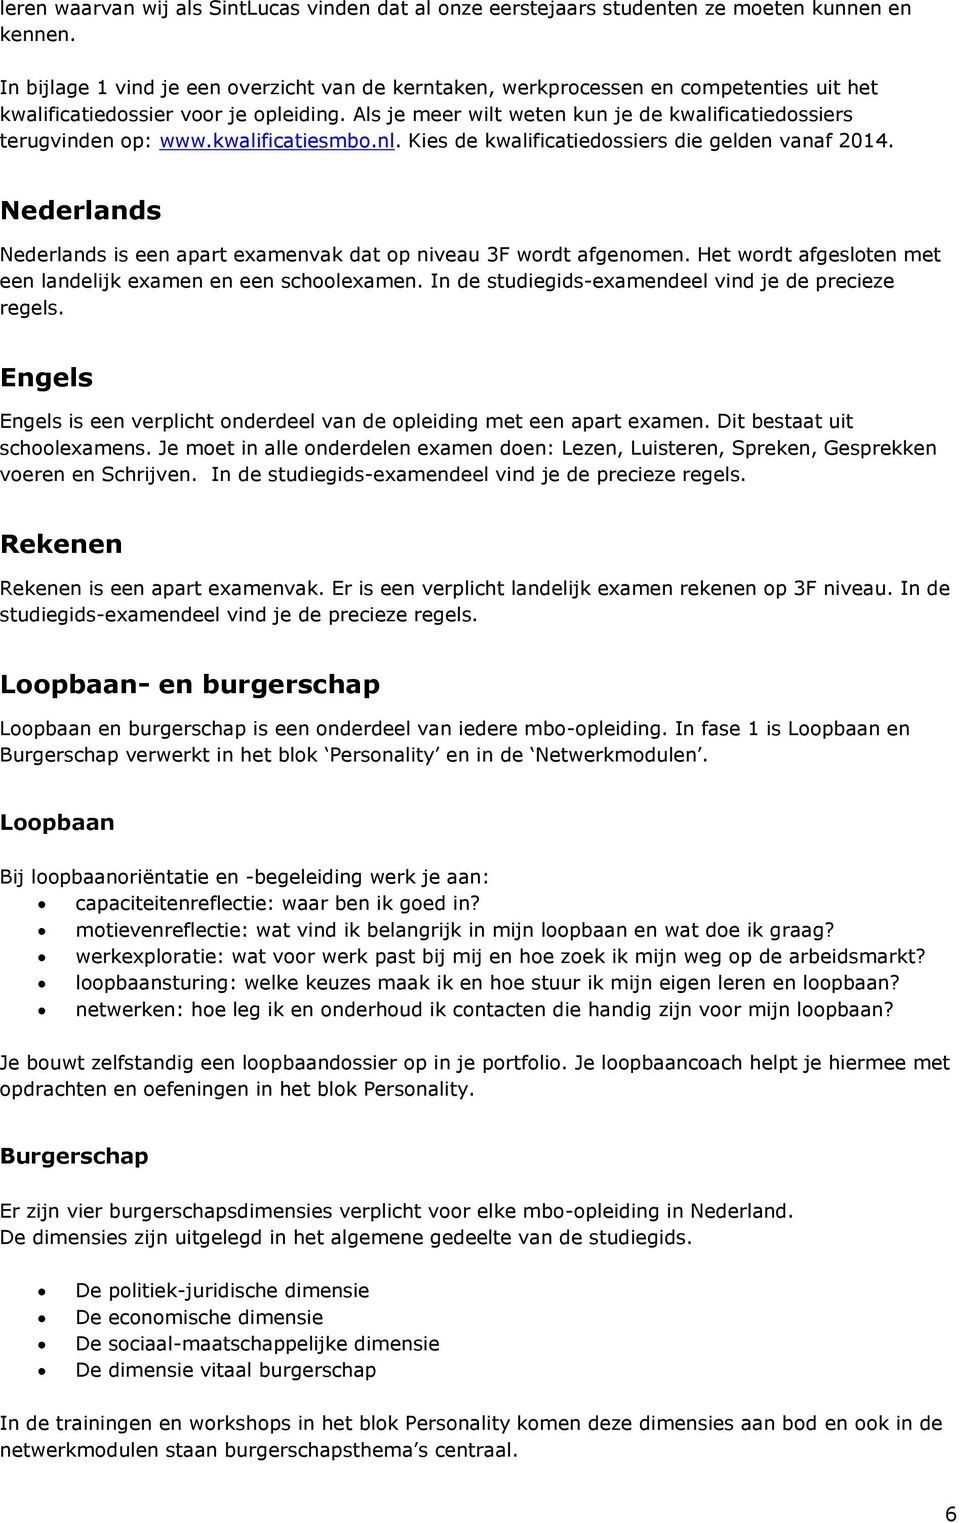 Als je meer wilt weten kun je de kwalificatiedossiers terugvinden op: www.kwalificatiesmbo.nl. Kies de kwalificatiedossiers die gelden vanaf 2014.